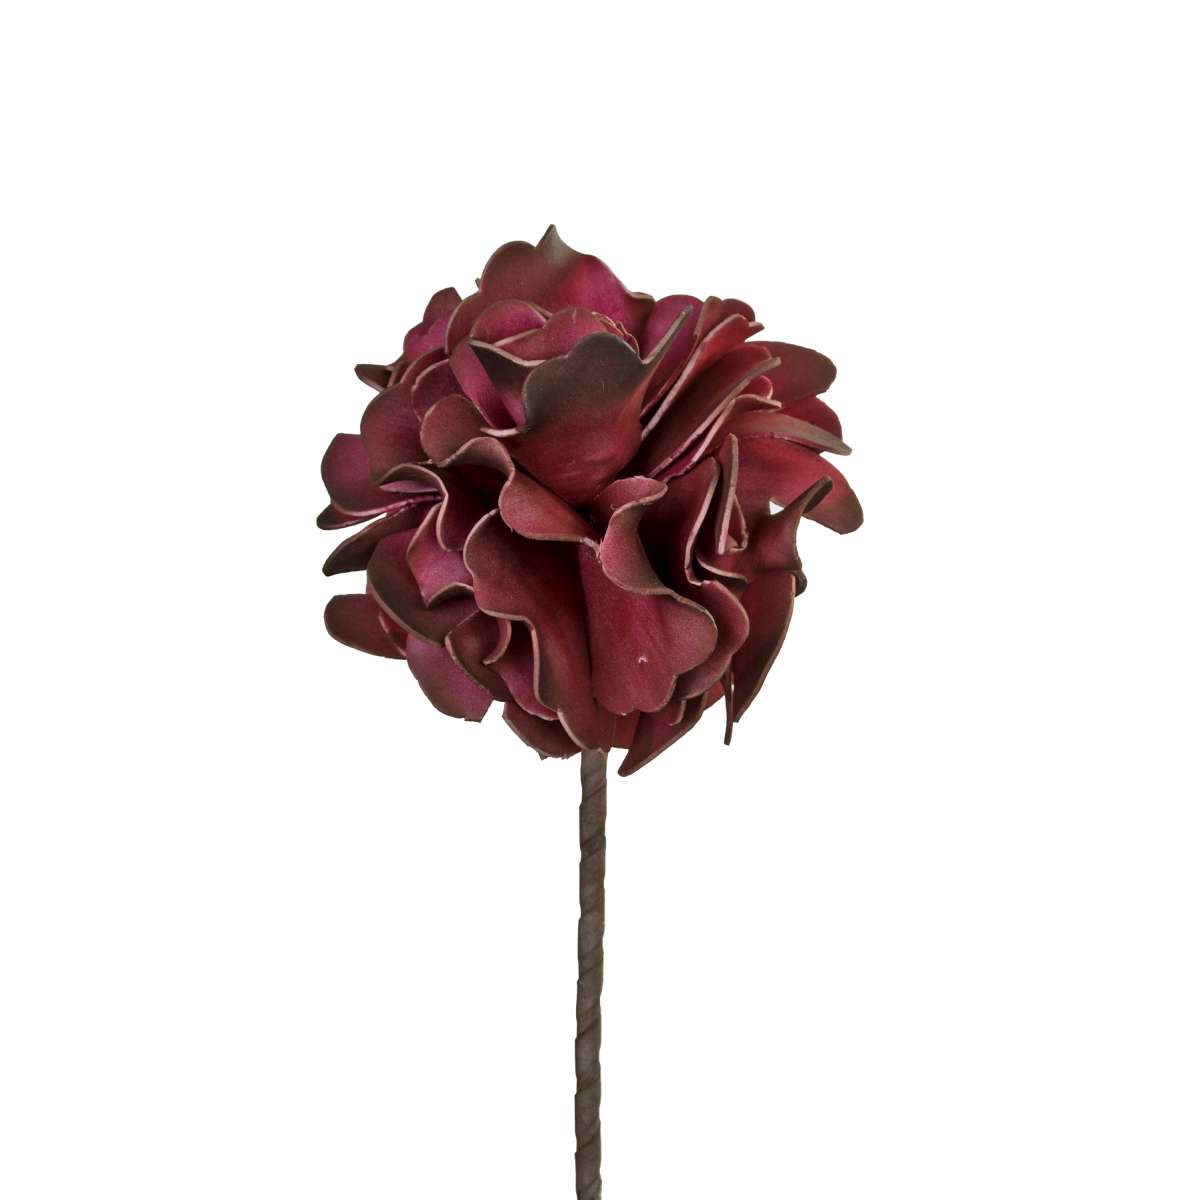 Λουλούδι Μπορντώ Art Et Lumiere 65εκ. 02419 (Σετ 6 Τεμάχια) (Χρώμα: Μπορντώ ) - Art Et Lumiere - lumiere_02419 137762